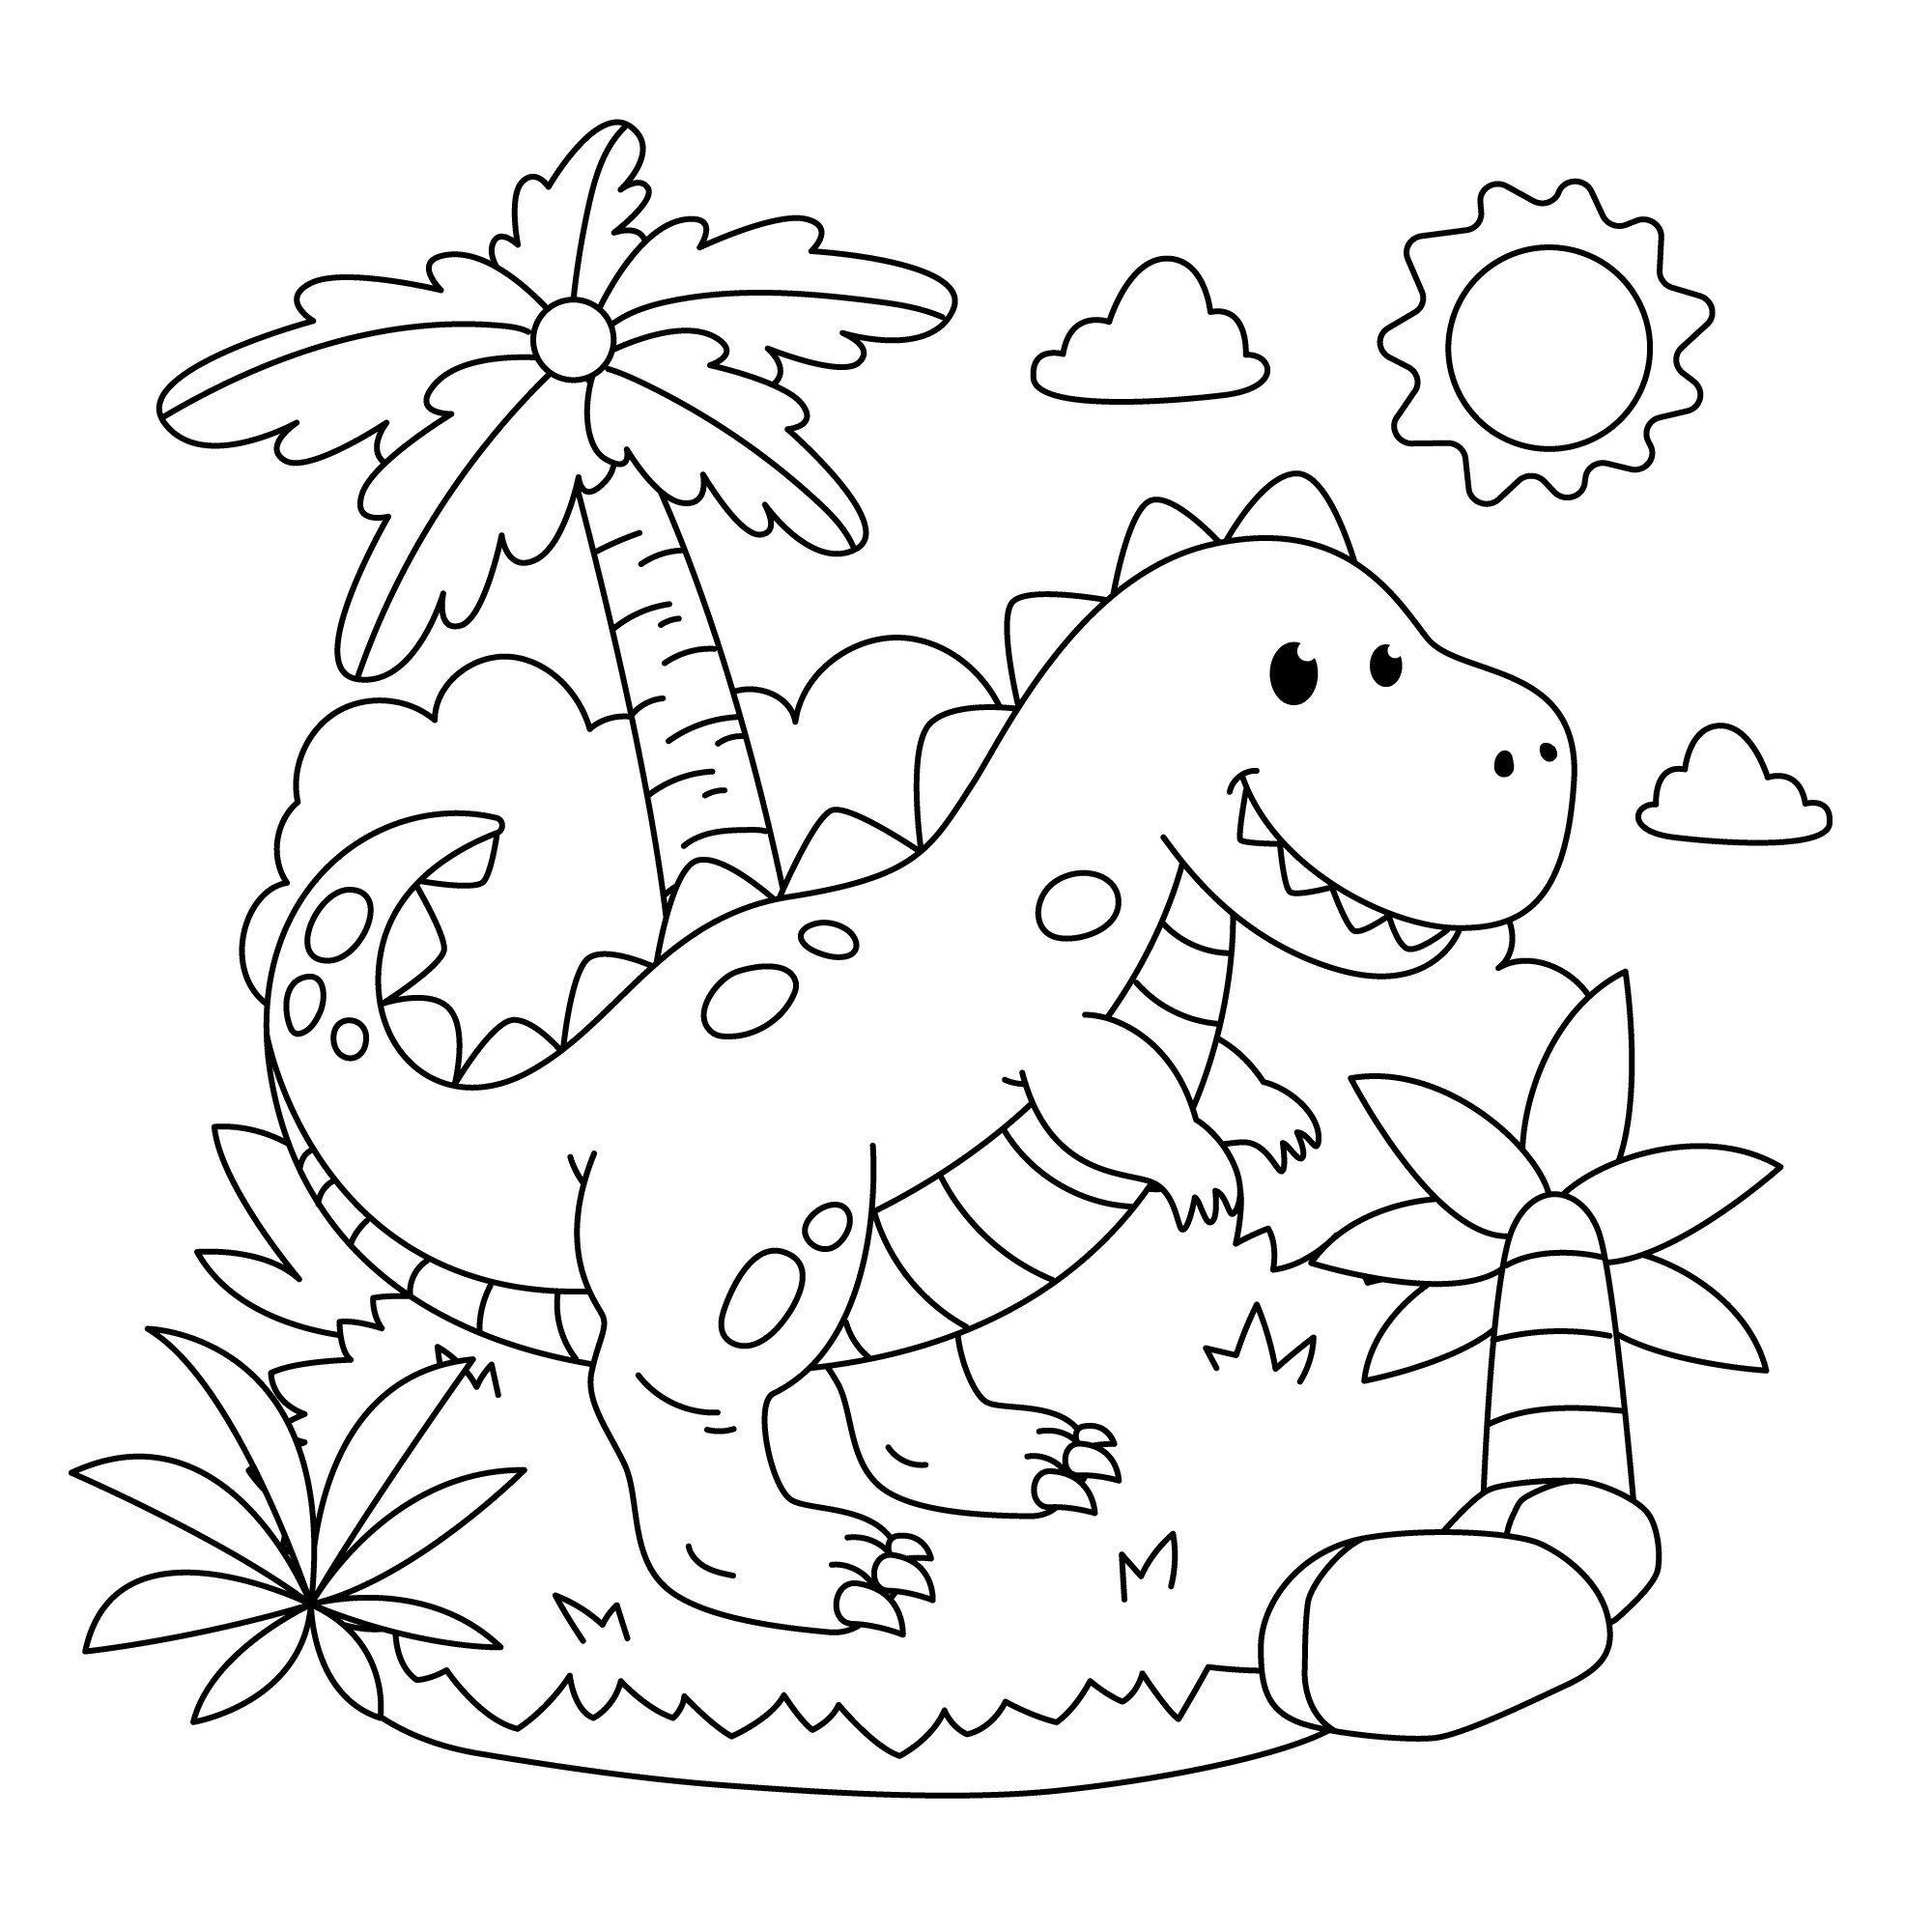 Раскраска для детей: динозавр юрского периода среди пальм